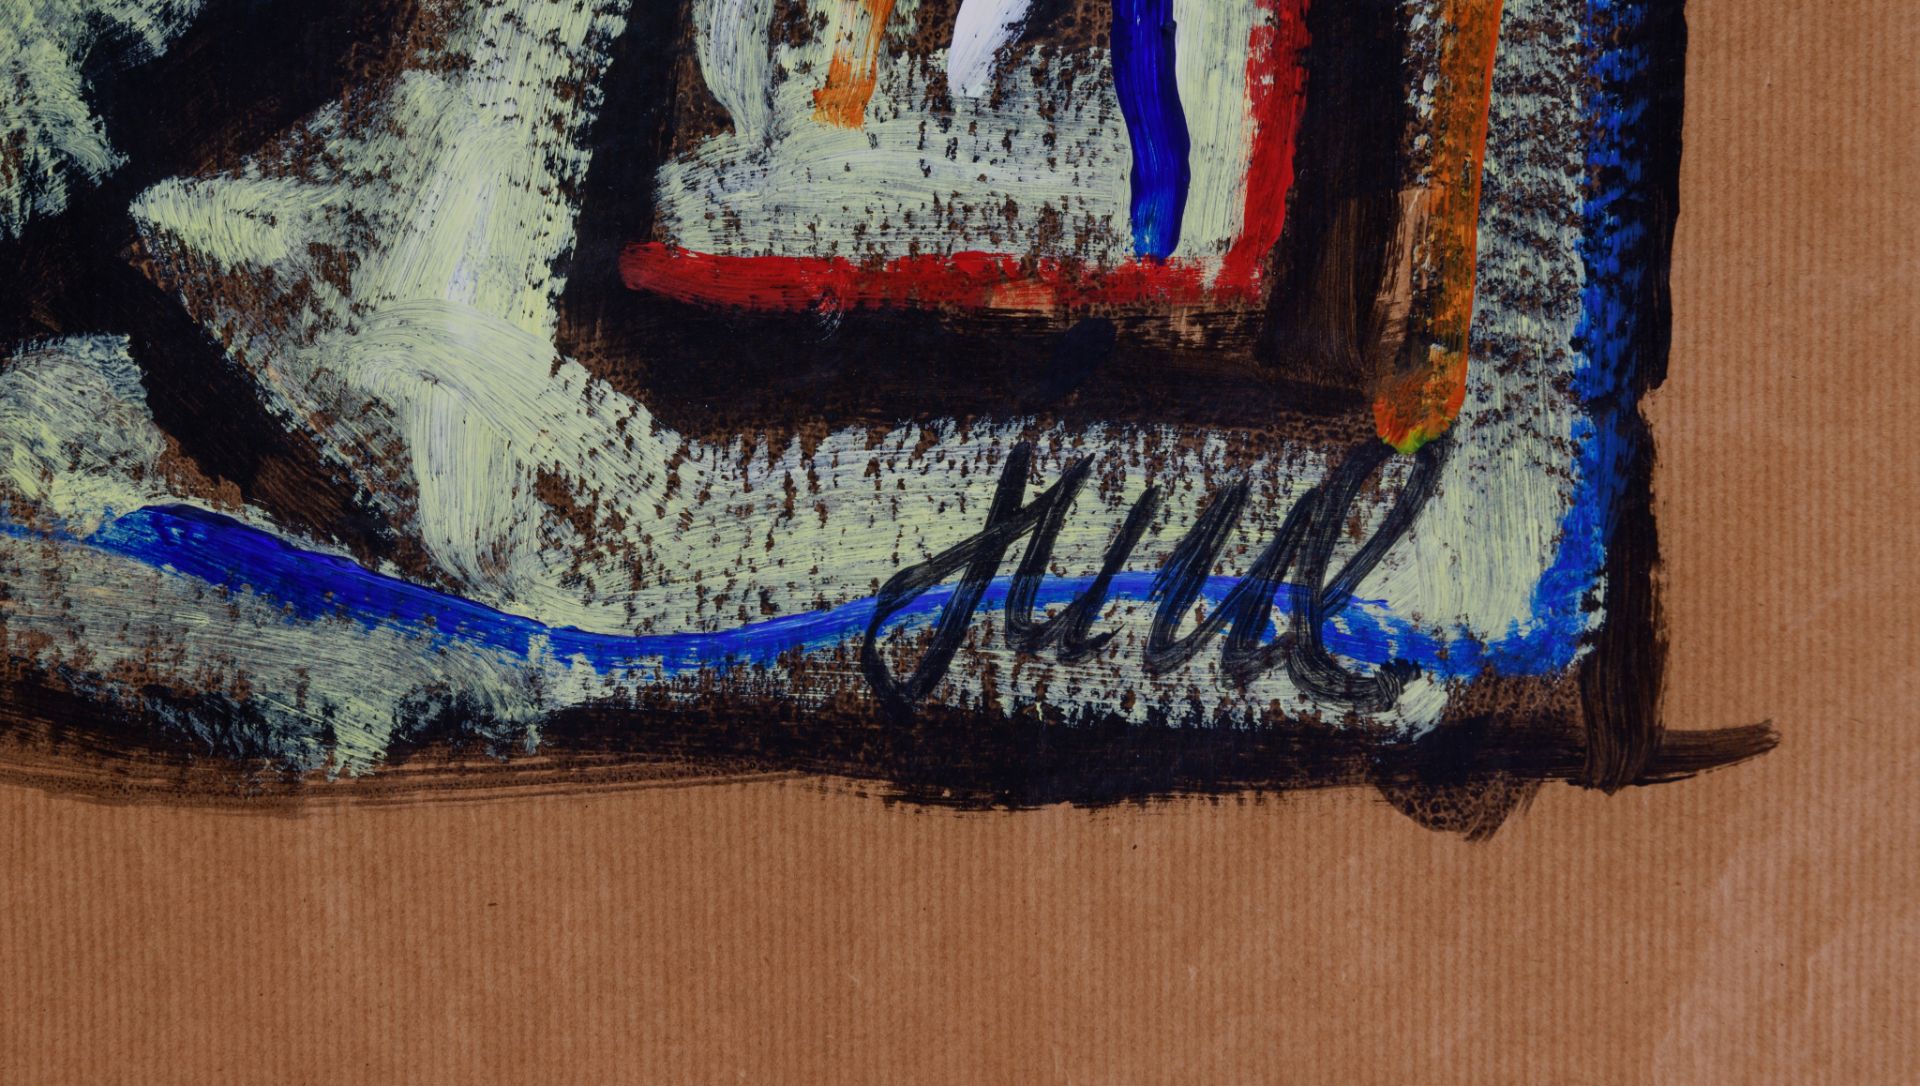 Juul van den Heuvel (1959), 1987, 65 x 180 cm - Image 3 of 5